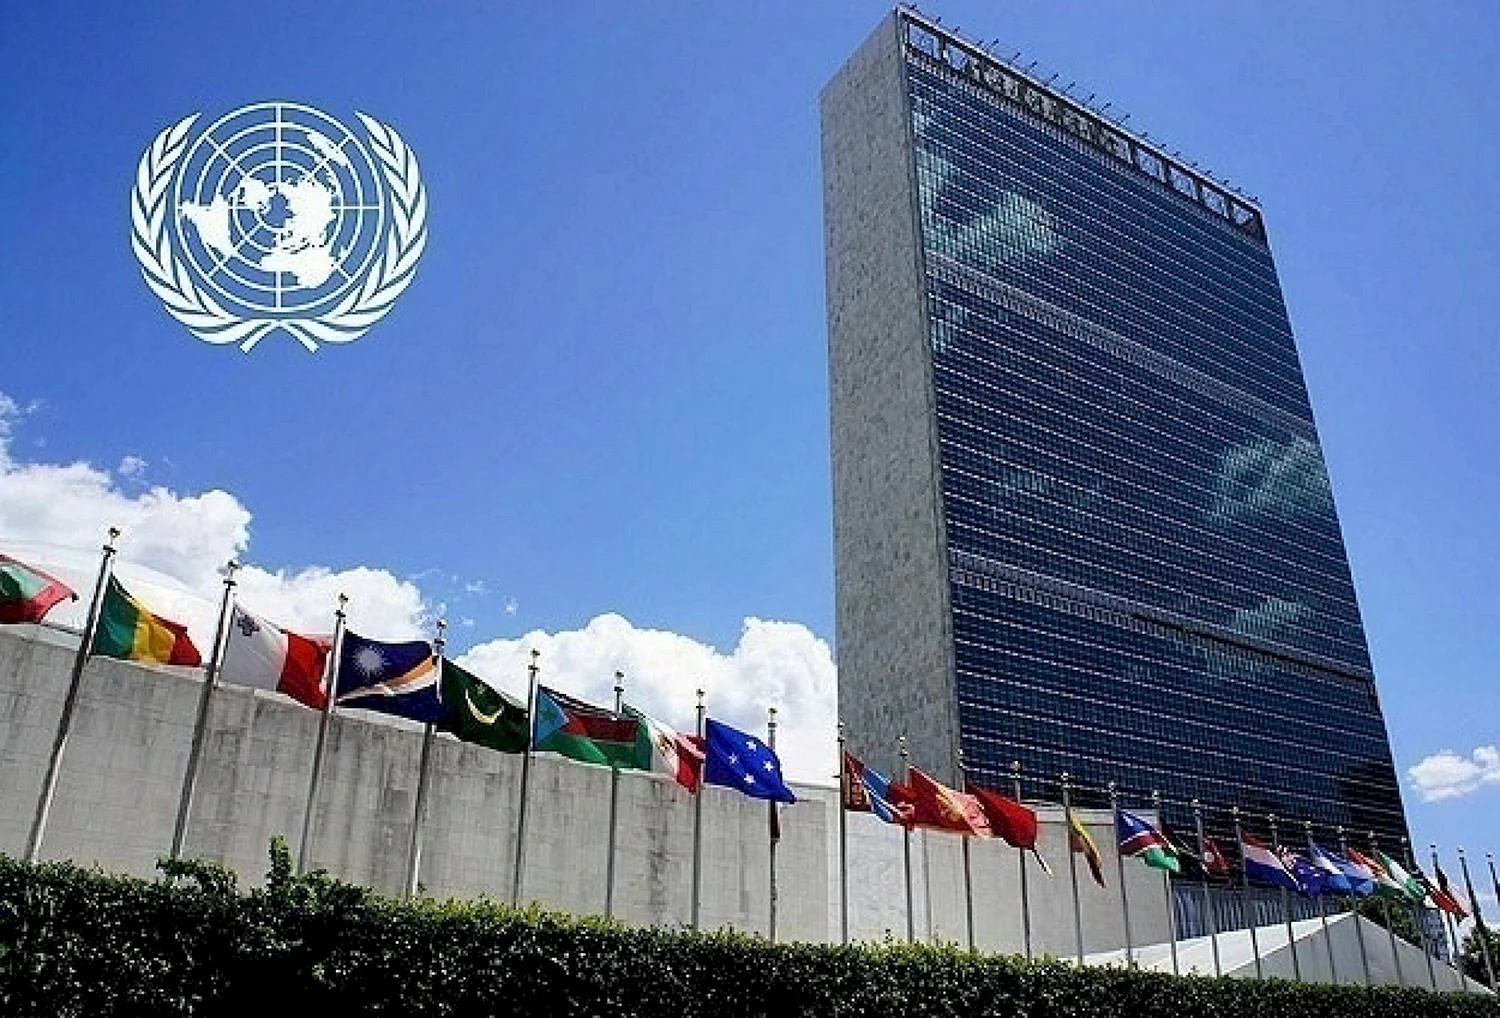 Здание Генеральной Ассамблеи ООН В Нью-Йорке